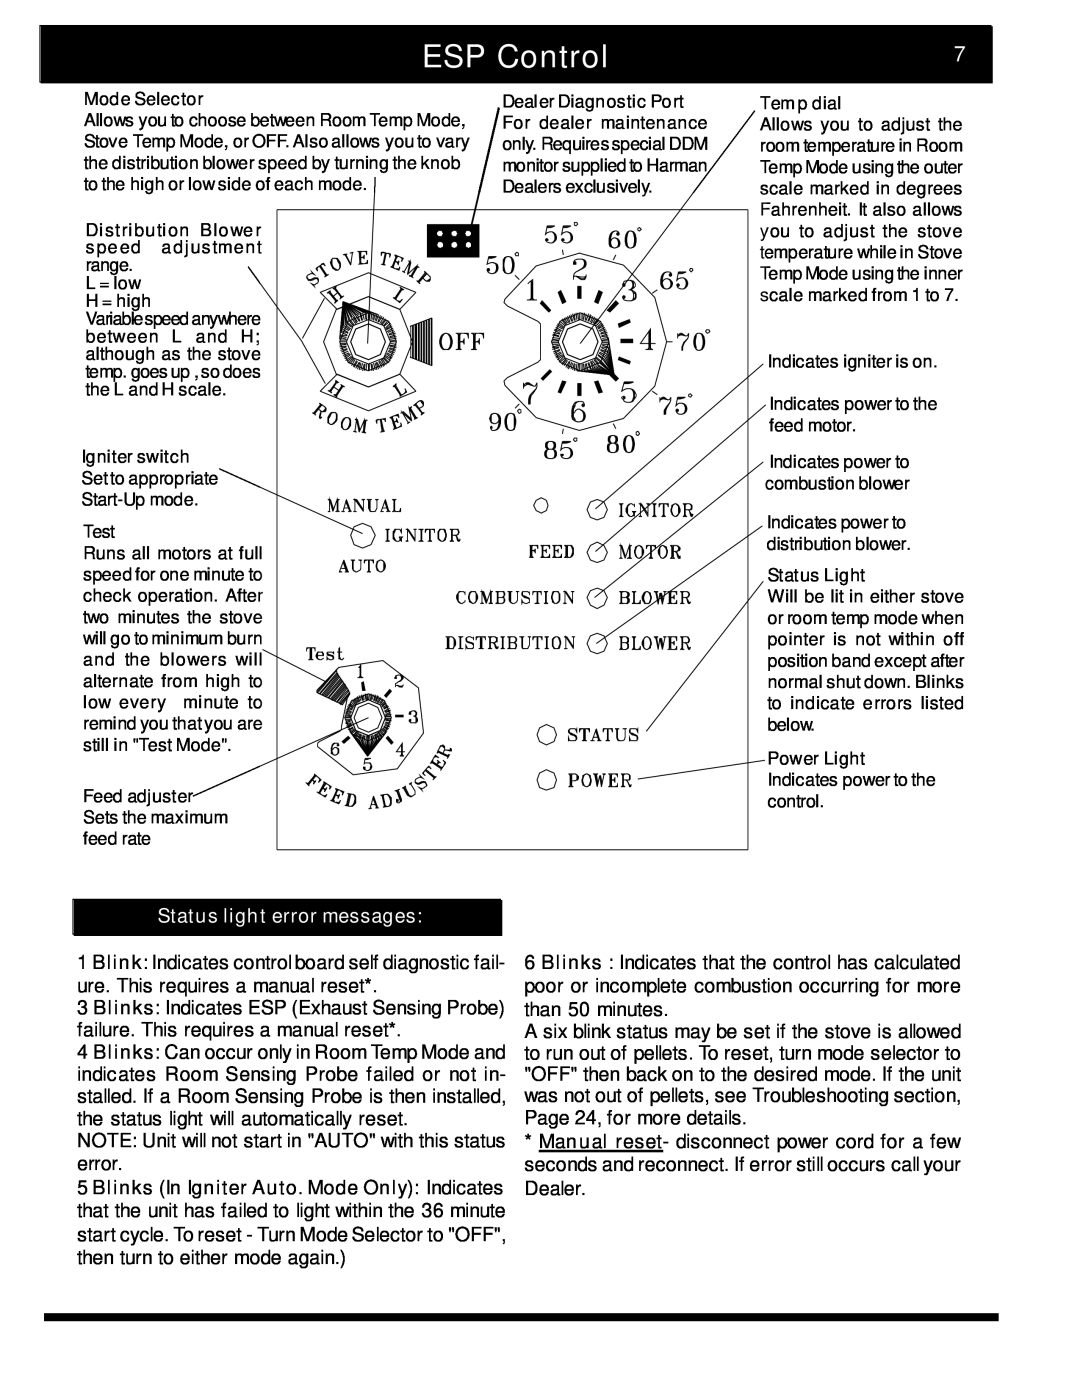 Harman Stove Company 2 manual ESP Control, Status light error messages 